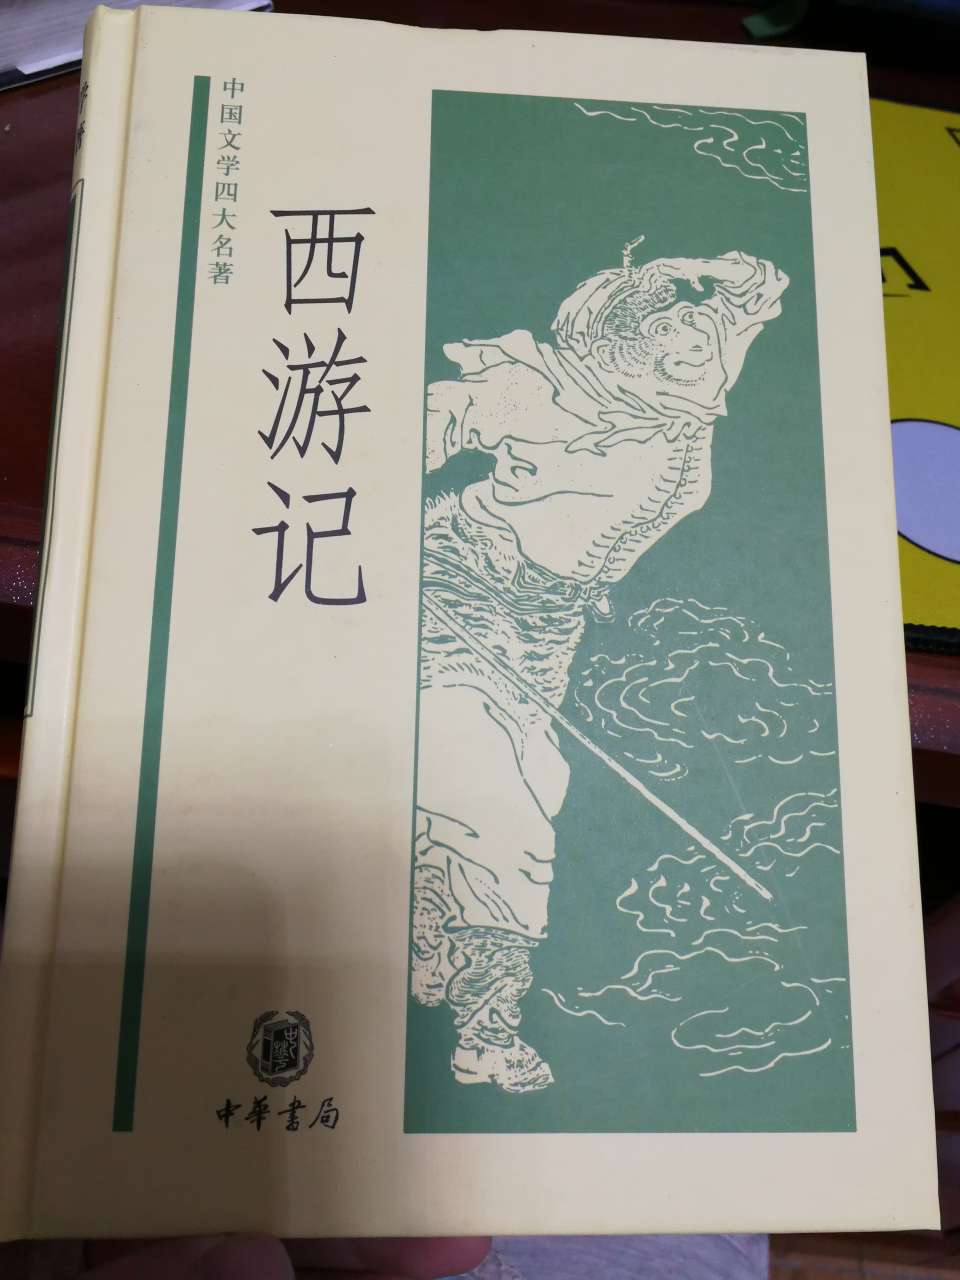 中华书局这一系列的书，北京瑞古冠中印刷厂印的，山寨印刷厂么？纸张和印刷都不怎么样，印刷重影，纸张也透。要不是我在新华书店买的也是这样，我都认为这是盗版了。跟中国文化丛书系列不能比。